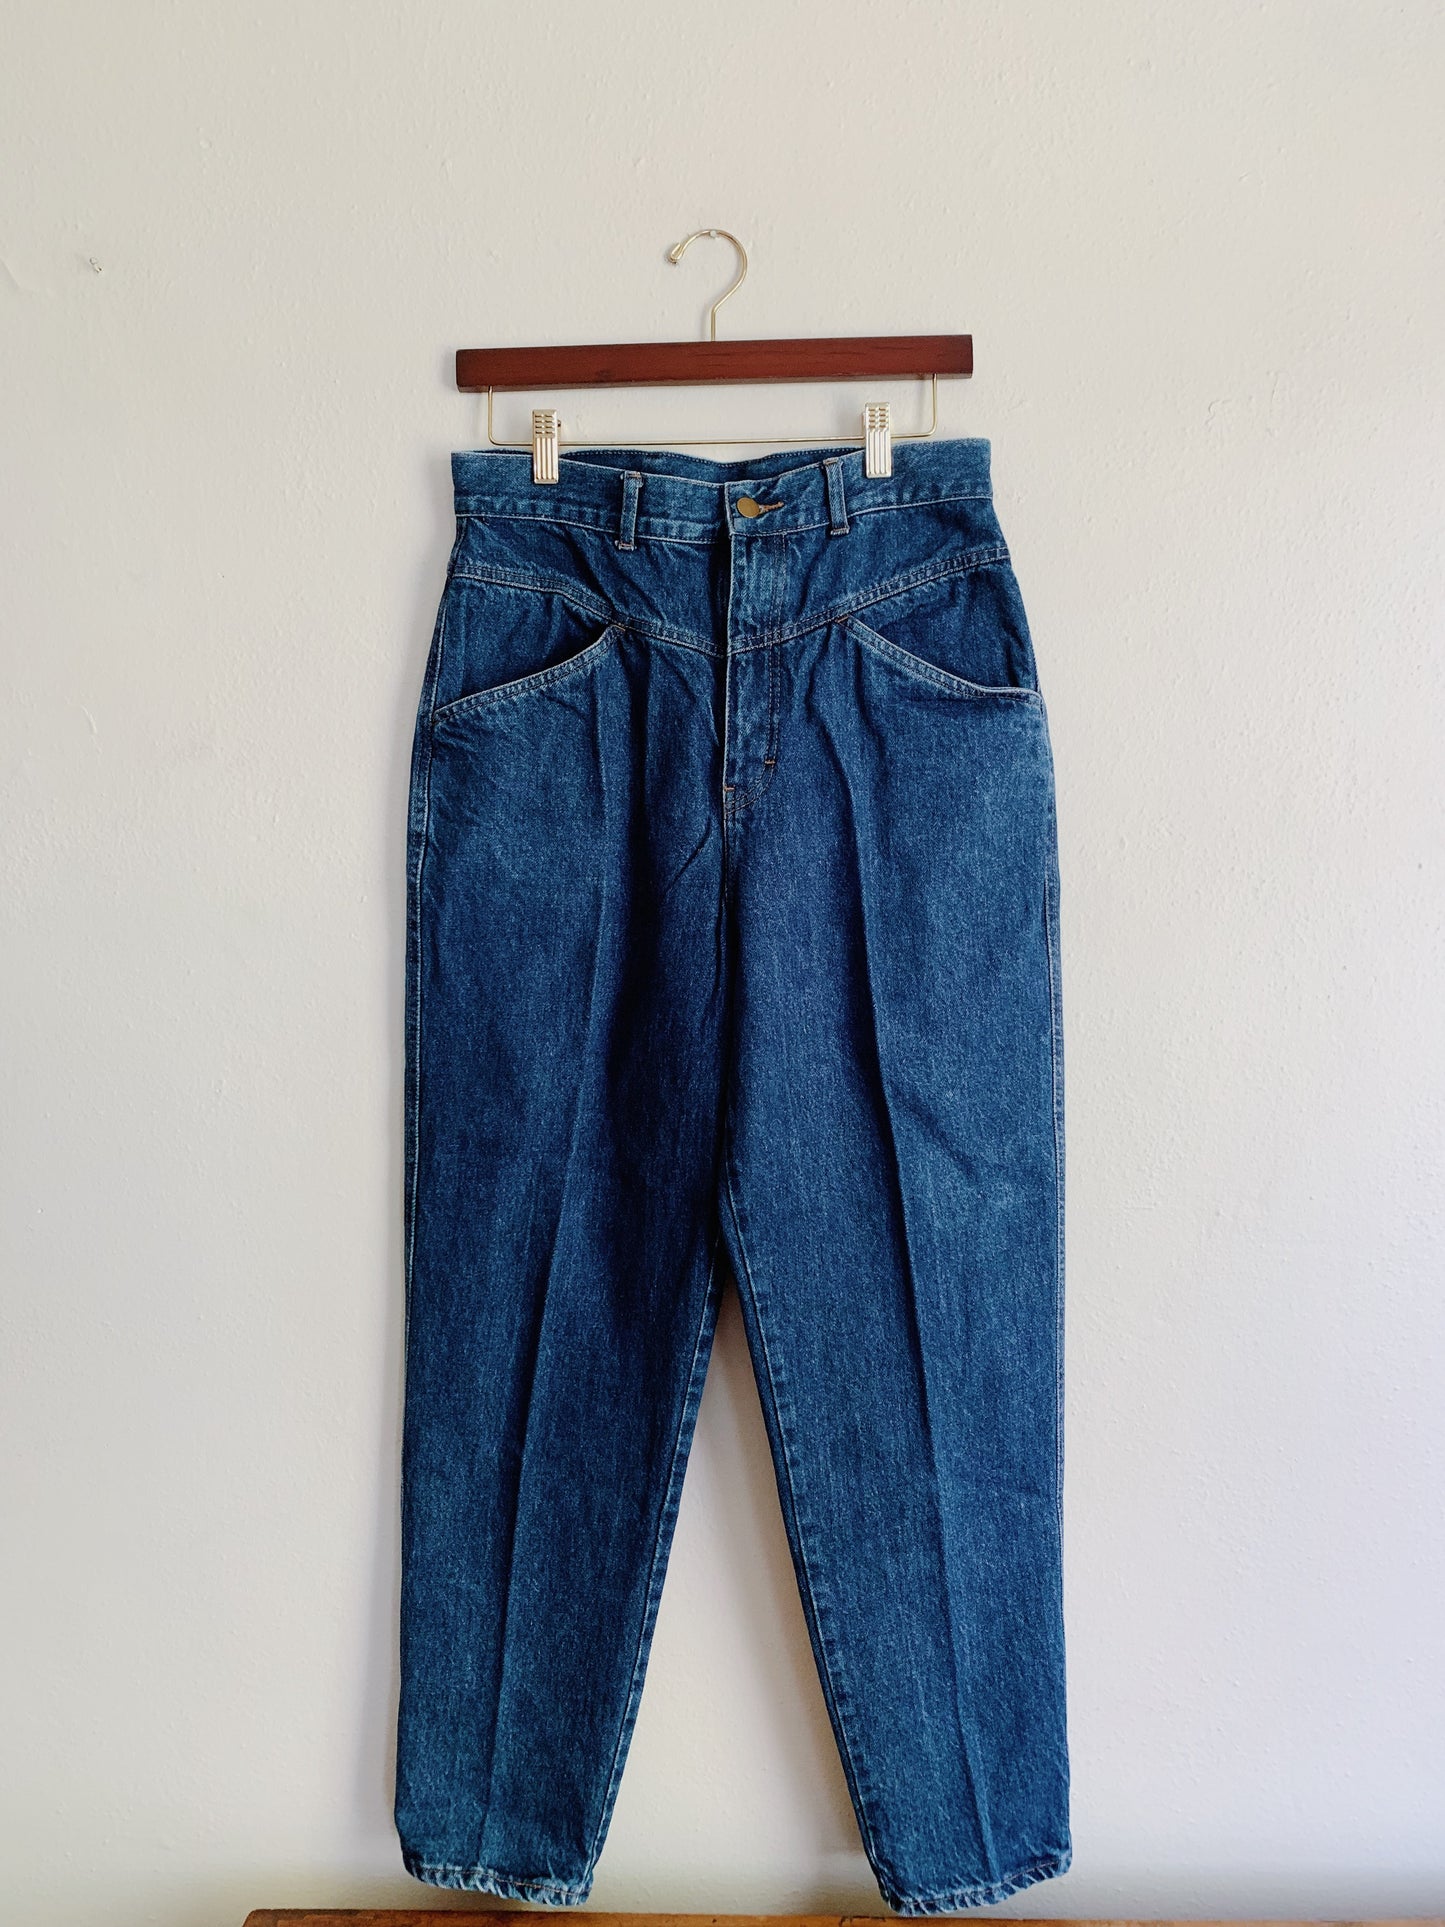 Vintage Denim Republic Jeans (30x27)